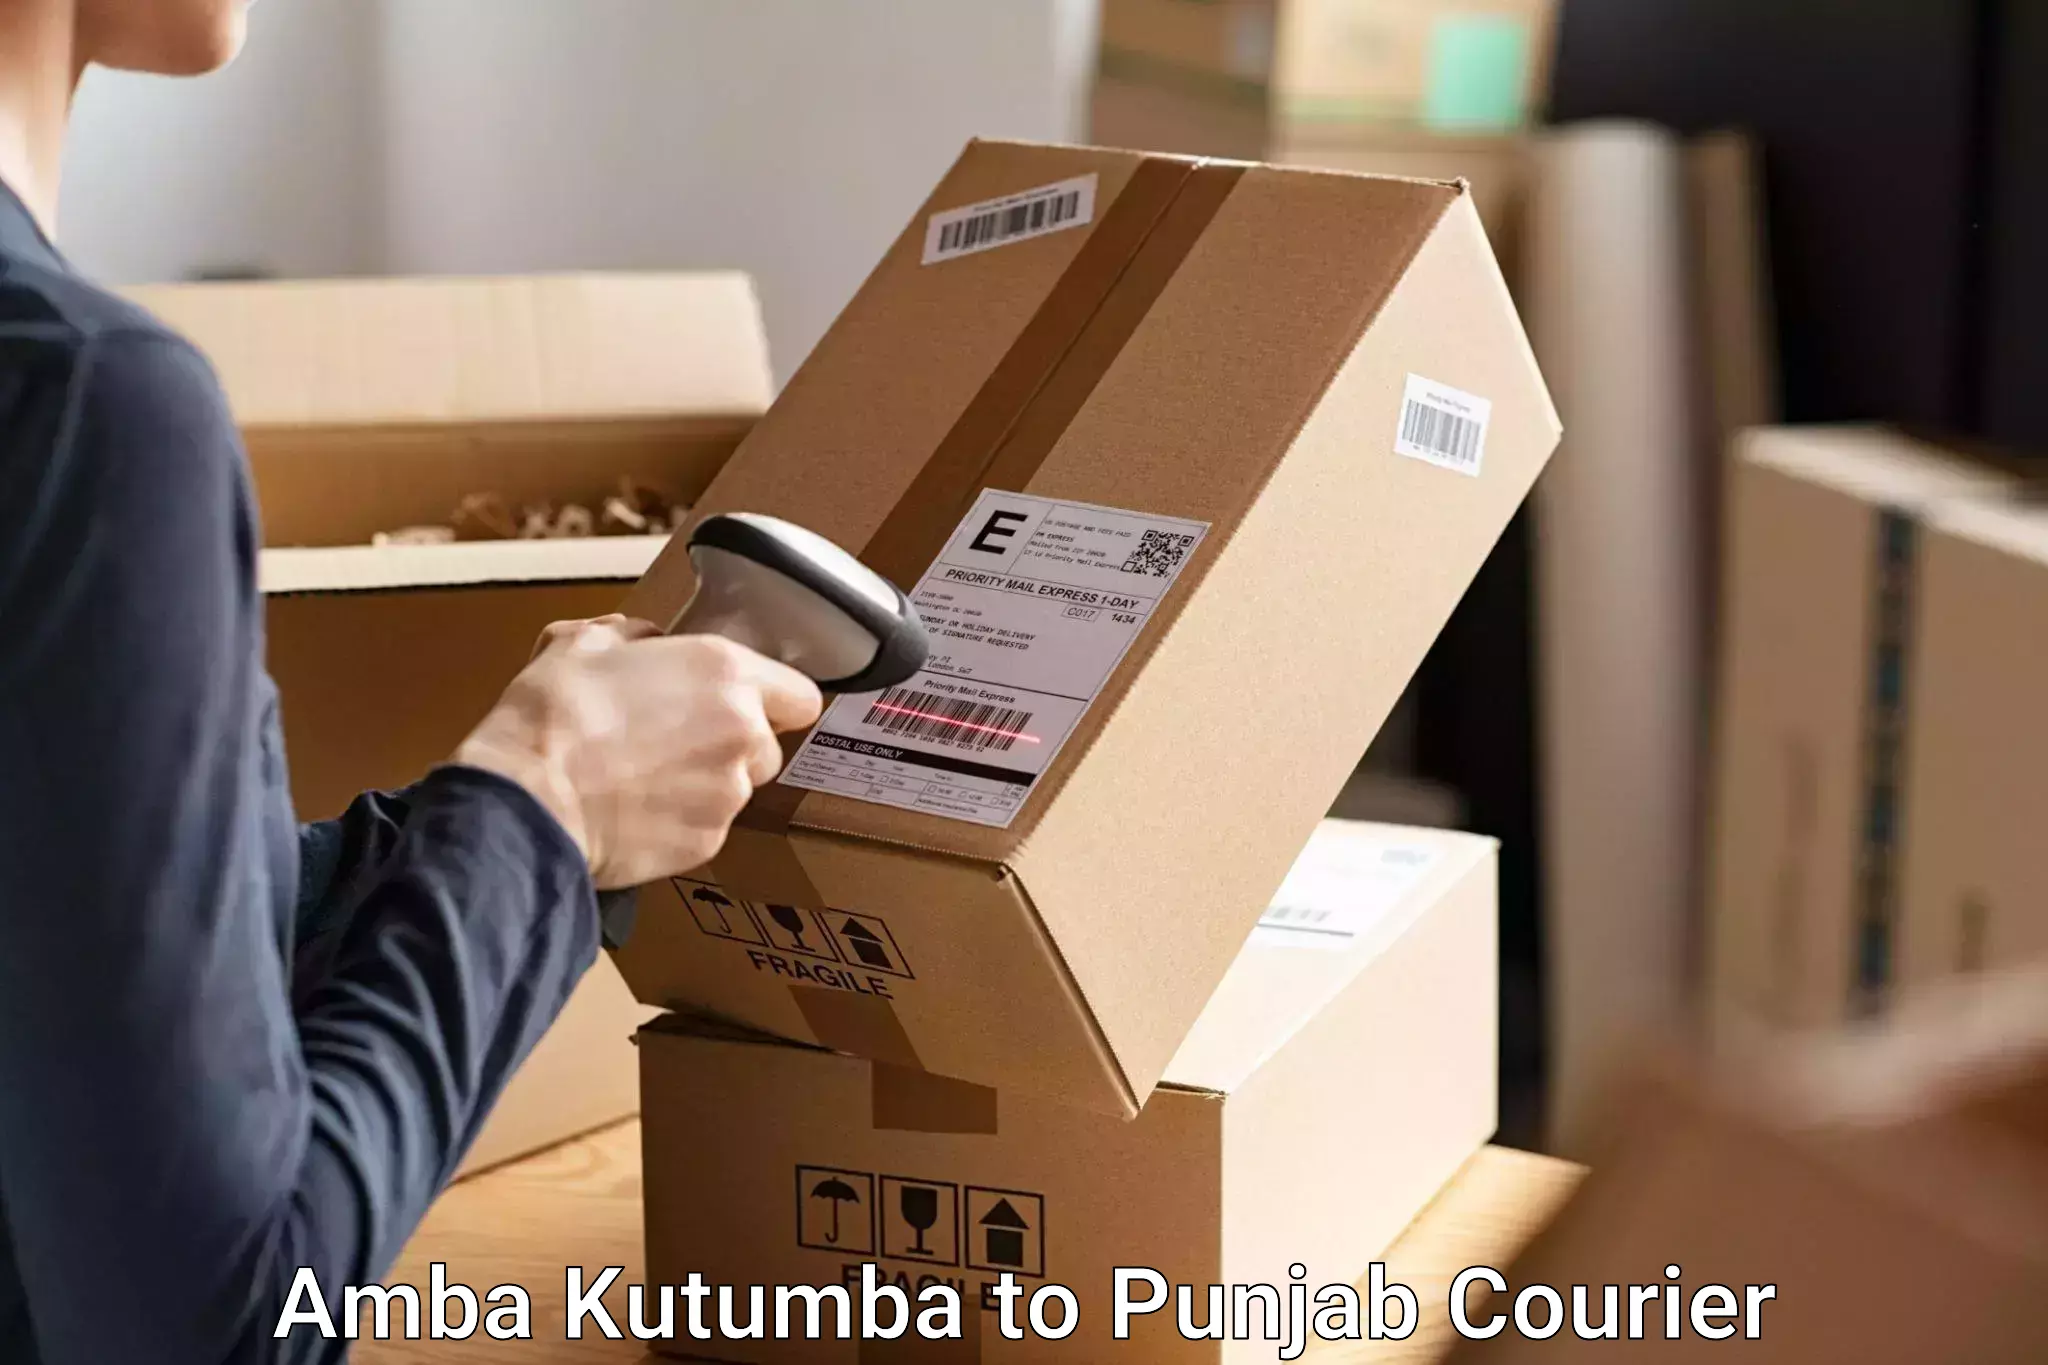 Urgent luggage shipment Amba Kutumba to Central University of Punjab Bathinda